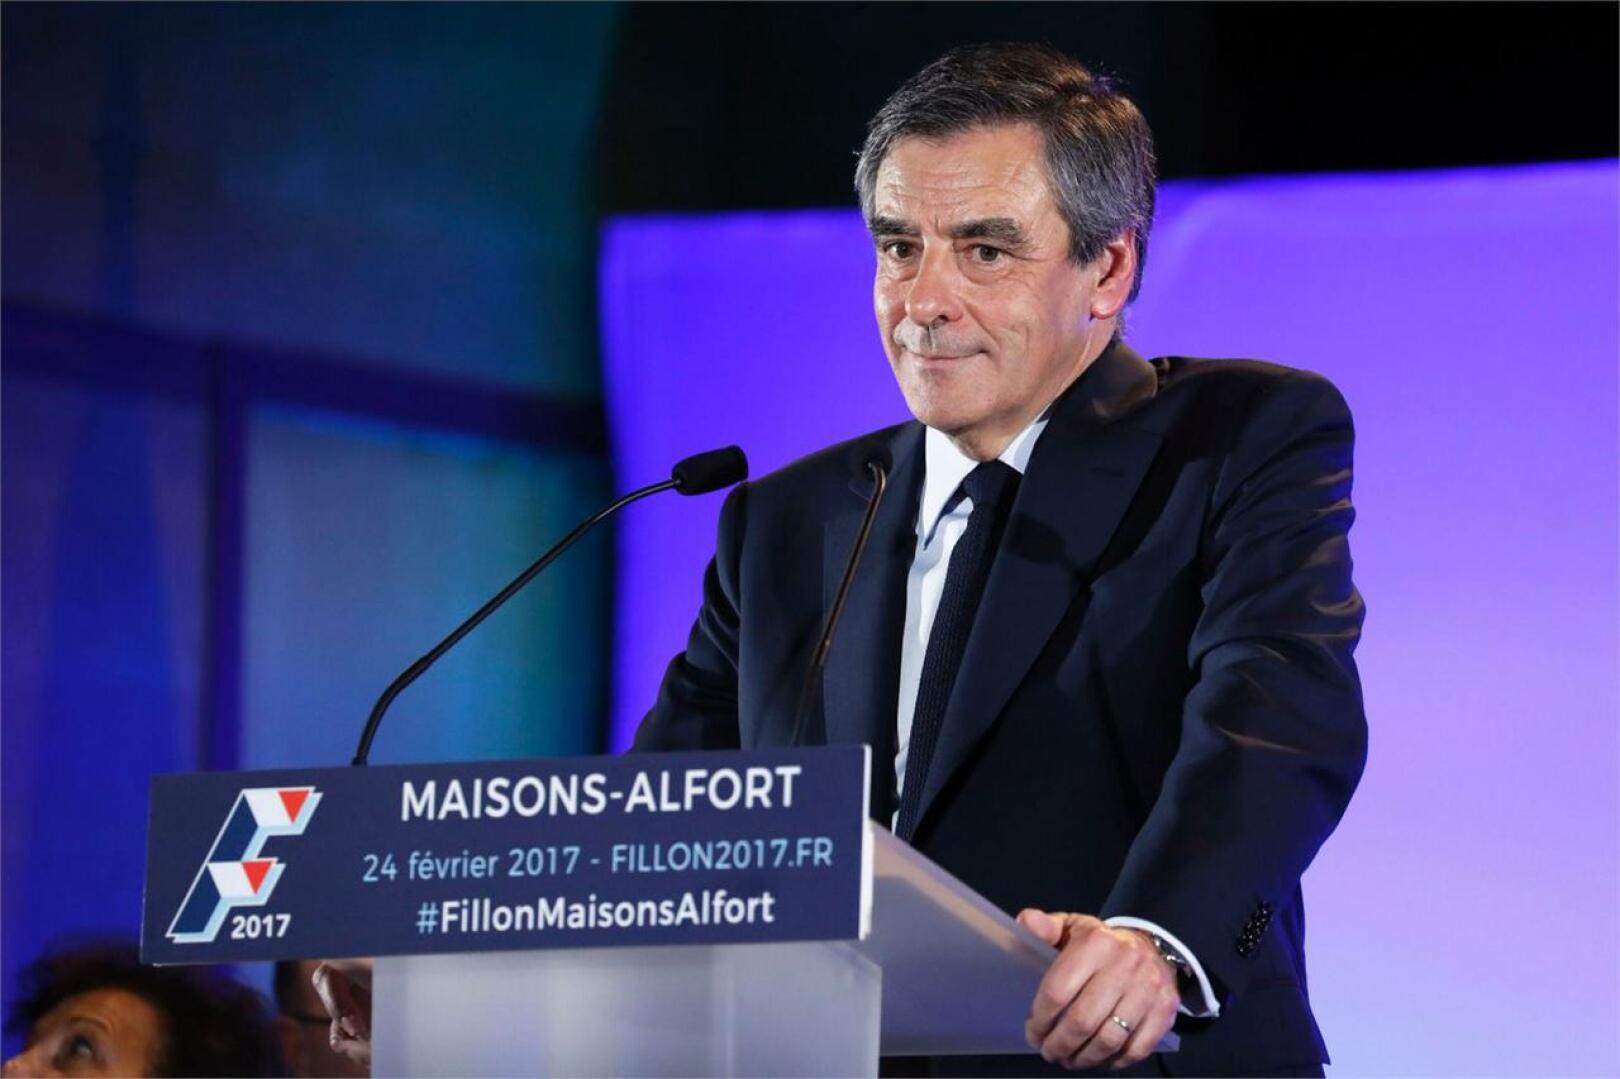 Francois Fillonin on epäilty maksaneen perusteettomasti parlamentin avustajapalkkioita vaimolleen. LEHTIKUVA/AFP